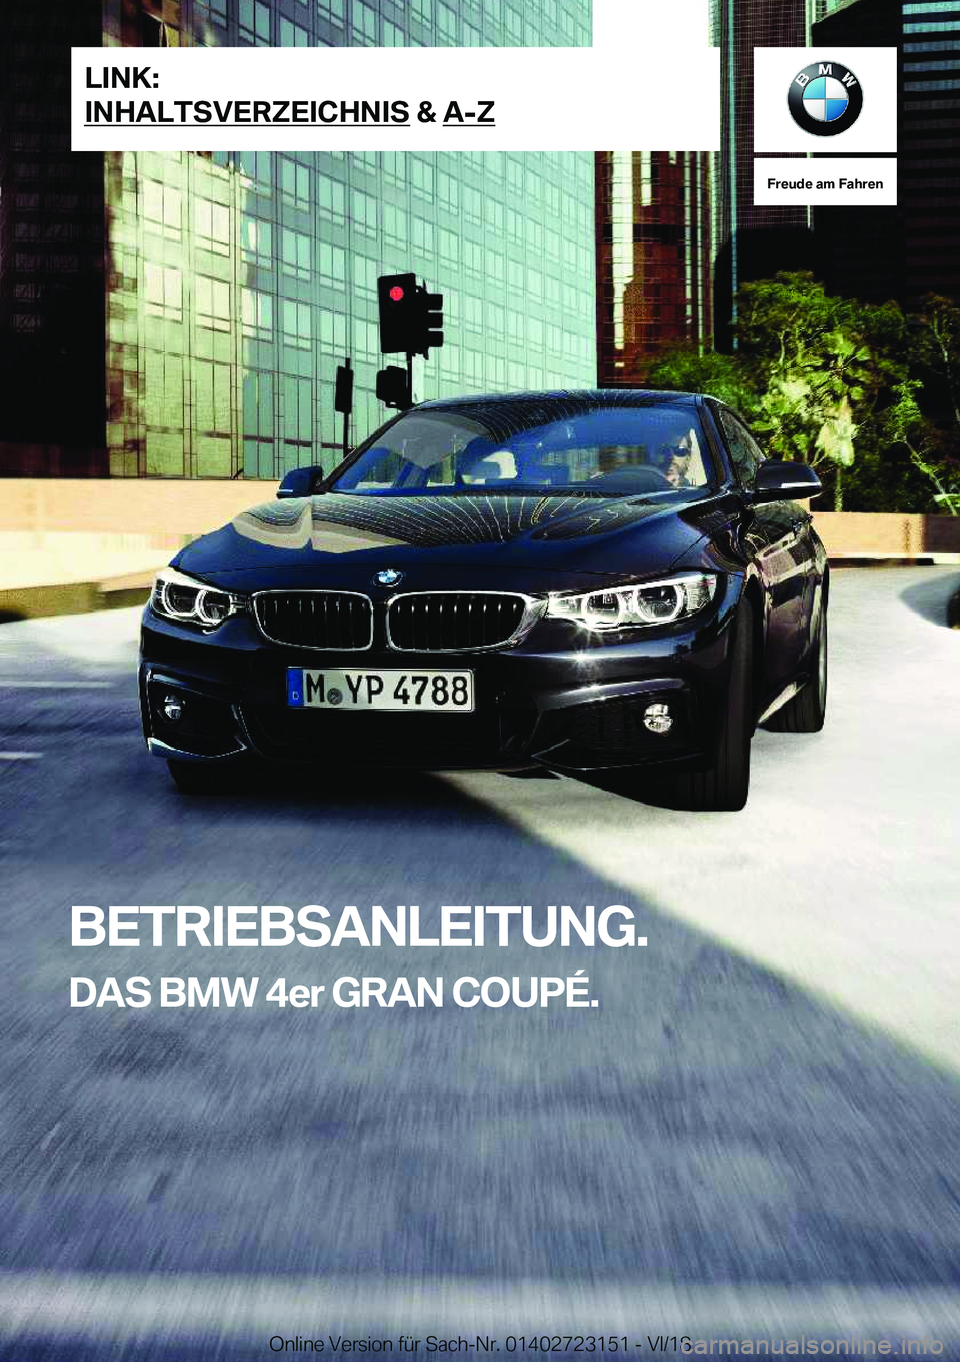 BMW 4 SERIES GRAN COUPE 2019  Betriebsanleitungen (in German) �F�r�e�u�d�e��a�m��F�a�h�r�e�n
�B�E�T�R�I�E�B�S�A�N�L�E�I�T�U�N�G�.�D�A�S��B�M�W��4�e�r��G�R�A�N��C�O�U�P�